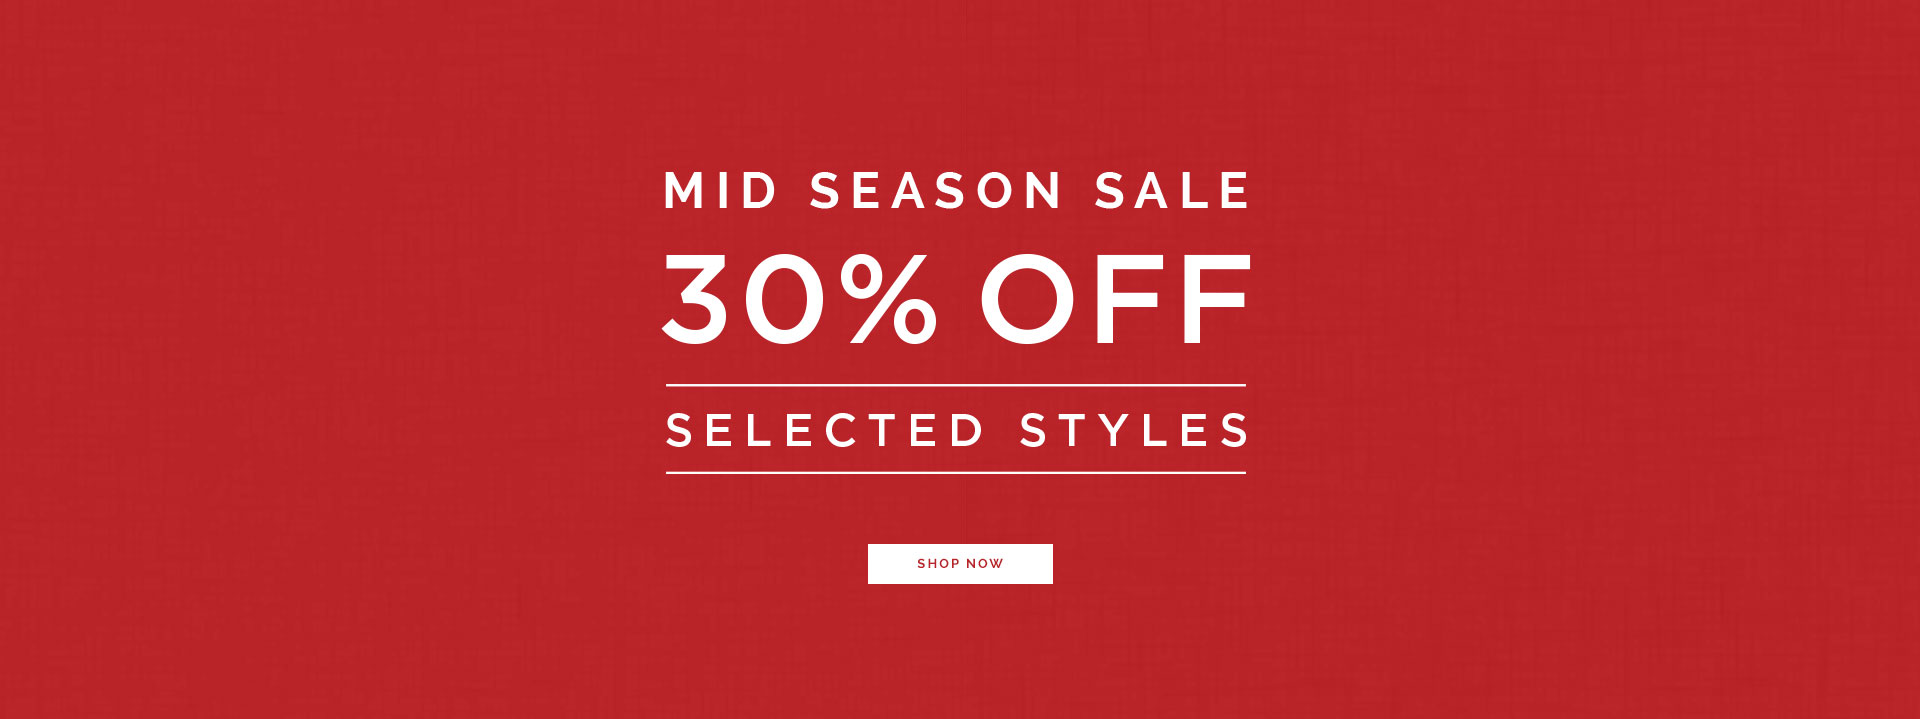 30% mid season sale 